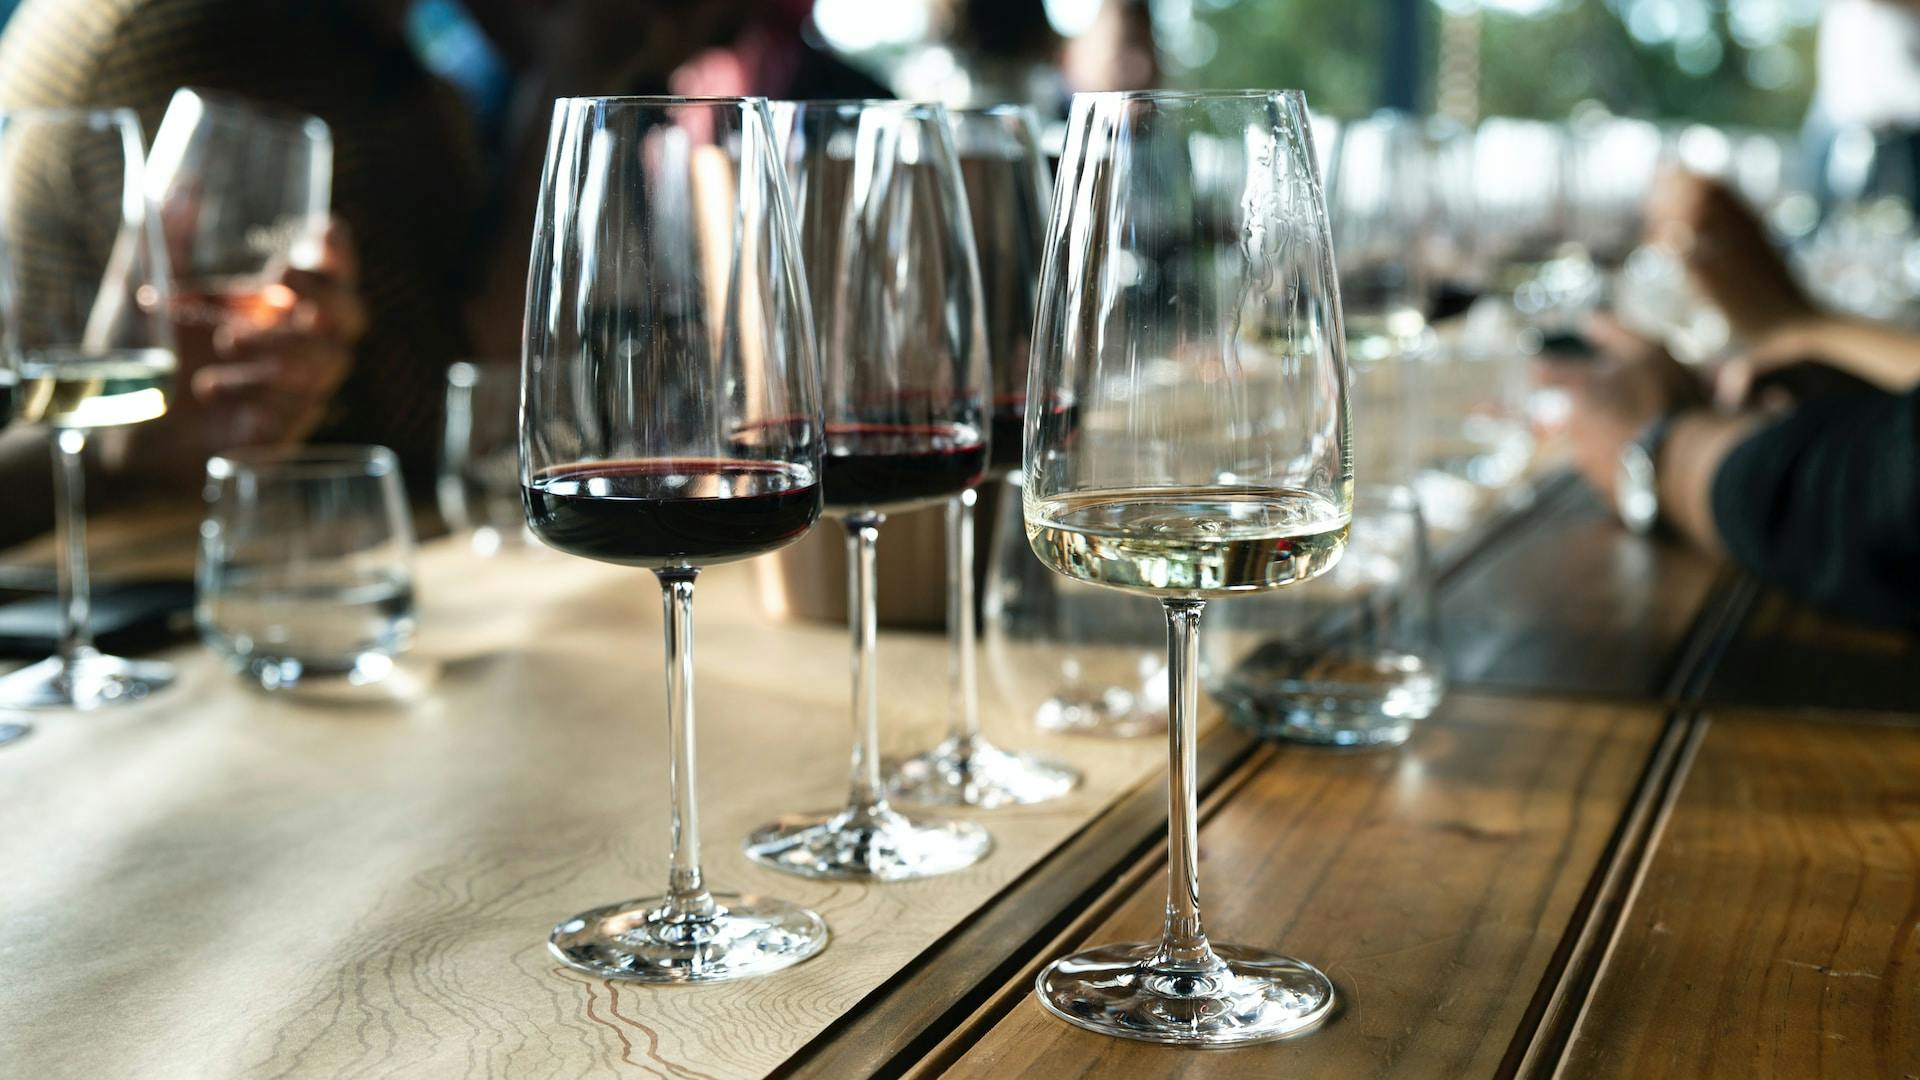 Rot- und Weißweingläser mit roter und durchsichtiger Flüssigkeit auf einem Tisch